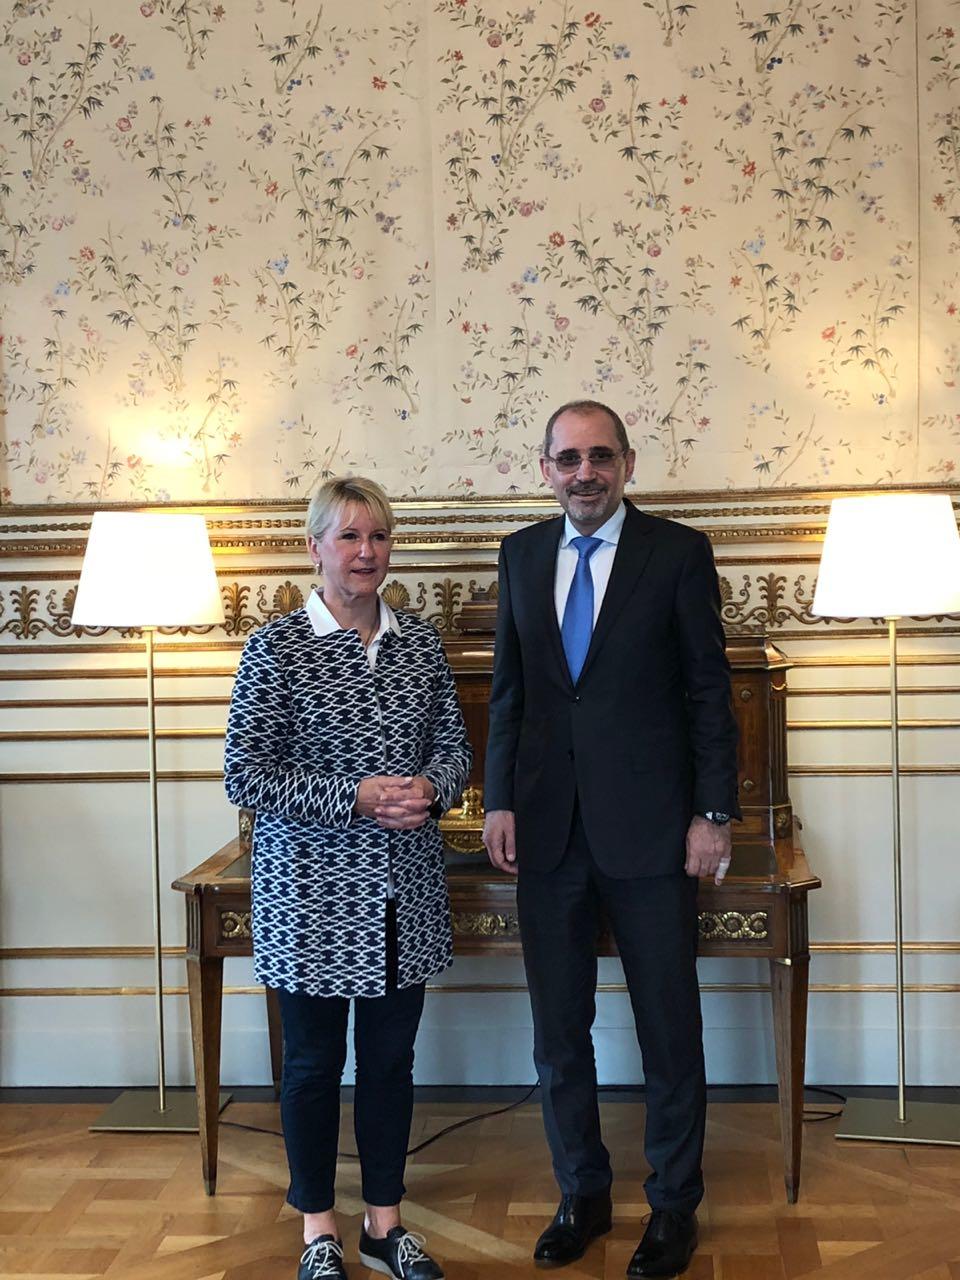 وزير الخارجية أيمن الصفدي (يمين) مع مع وزيرة خارجية السويد مارغو فالستروم. 23 أغسطس 2018. وزارة الخارجية الأردنية